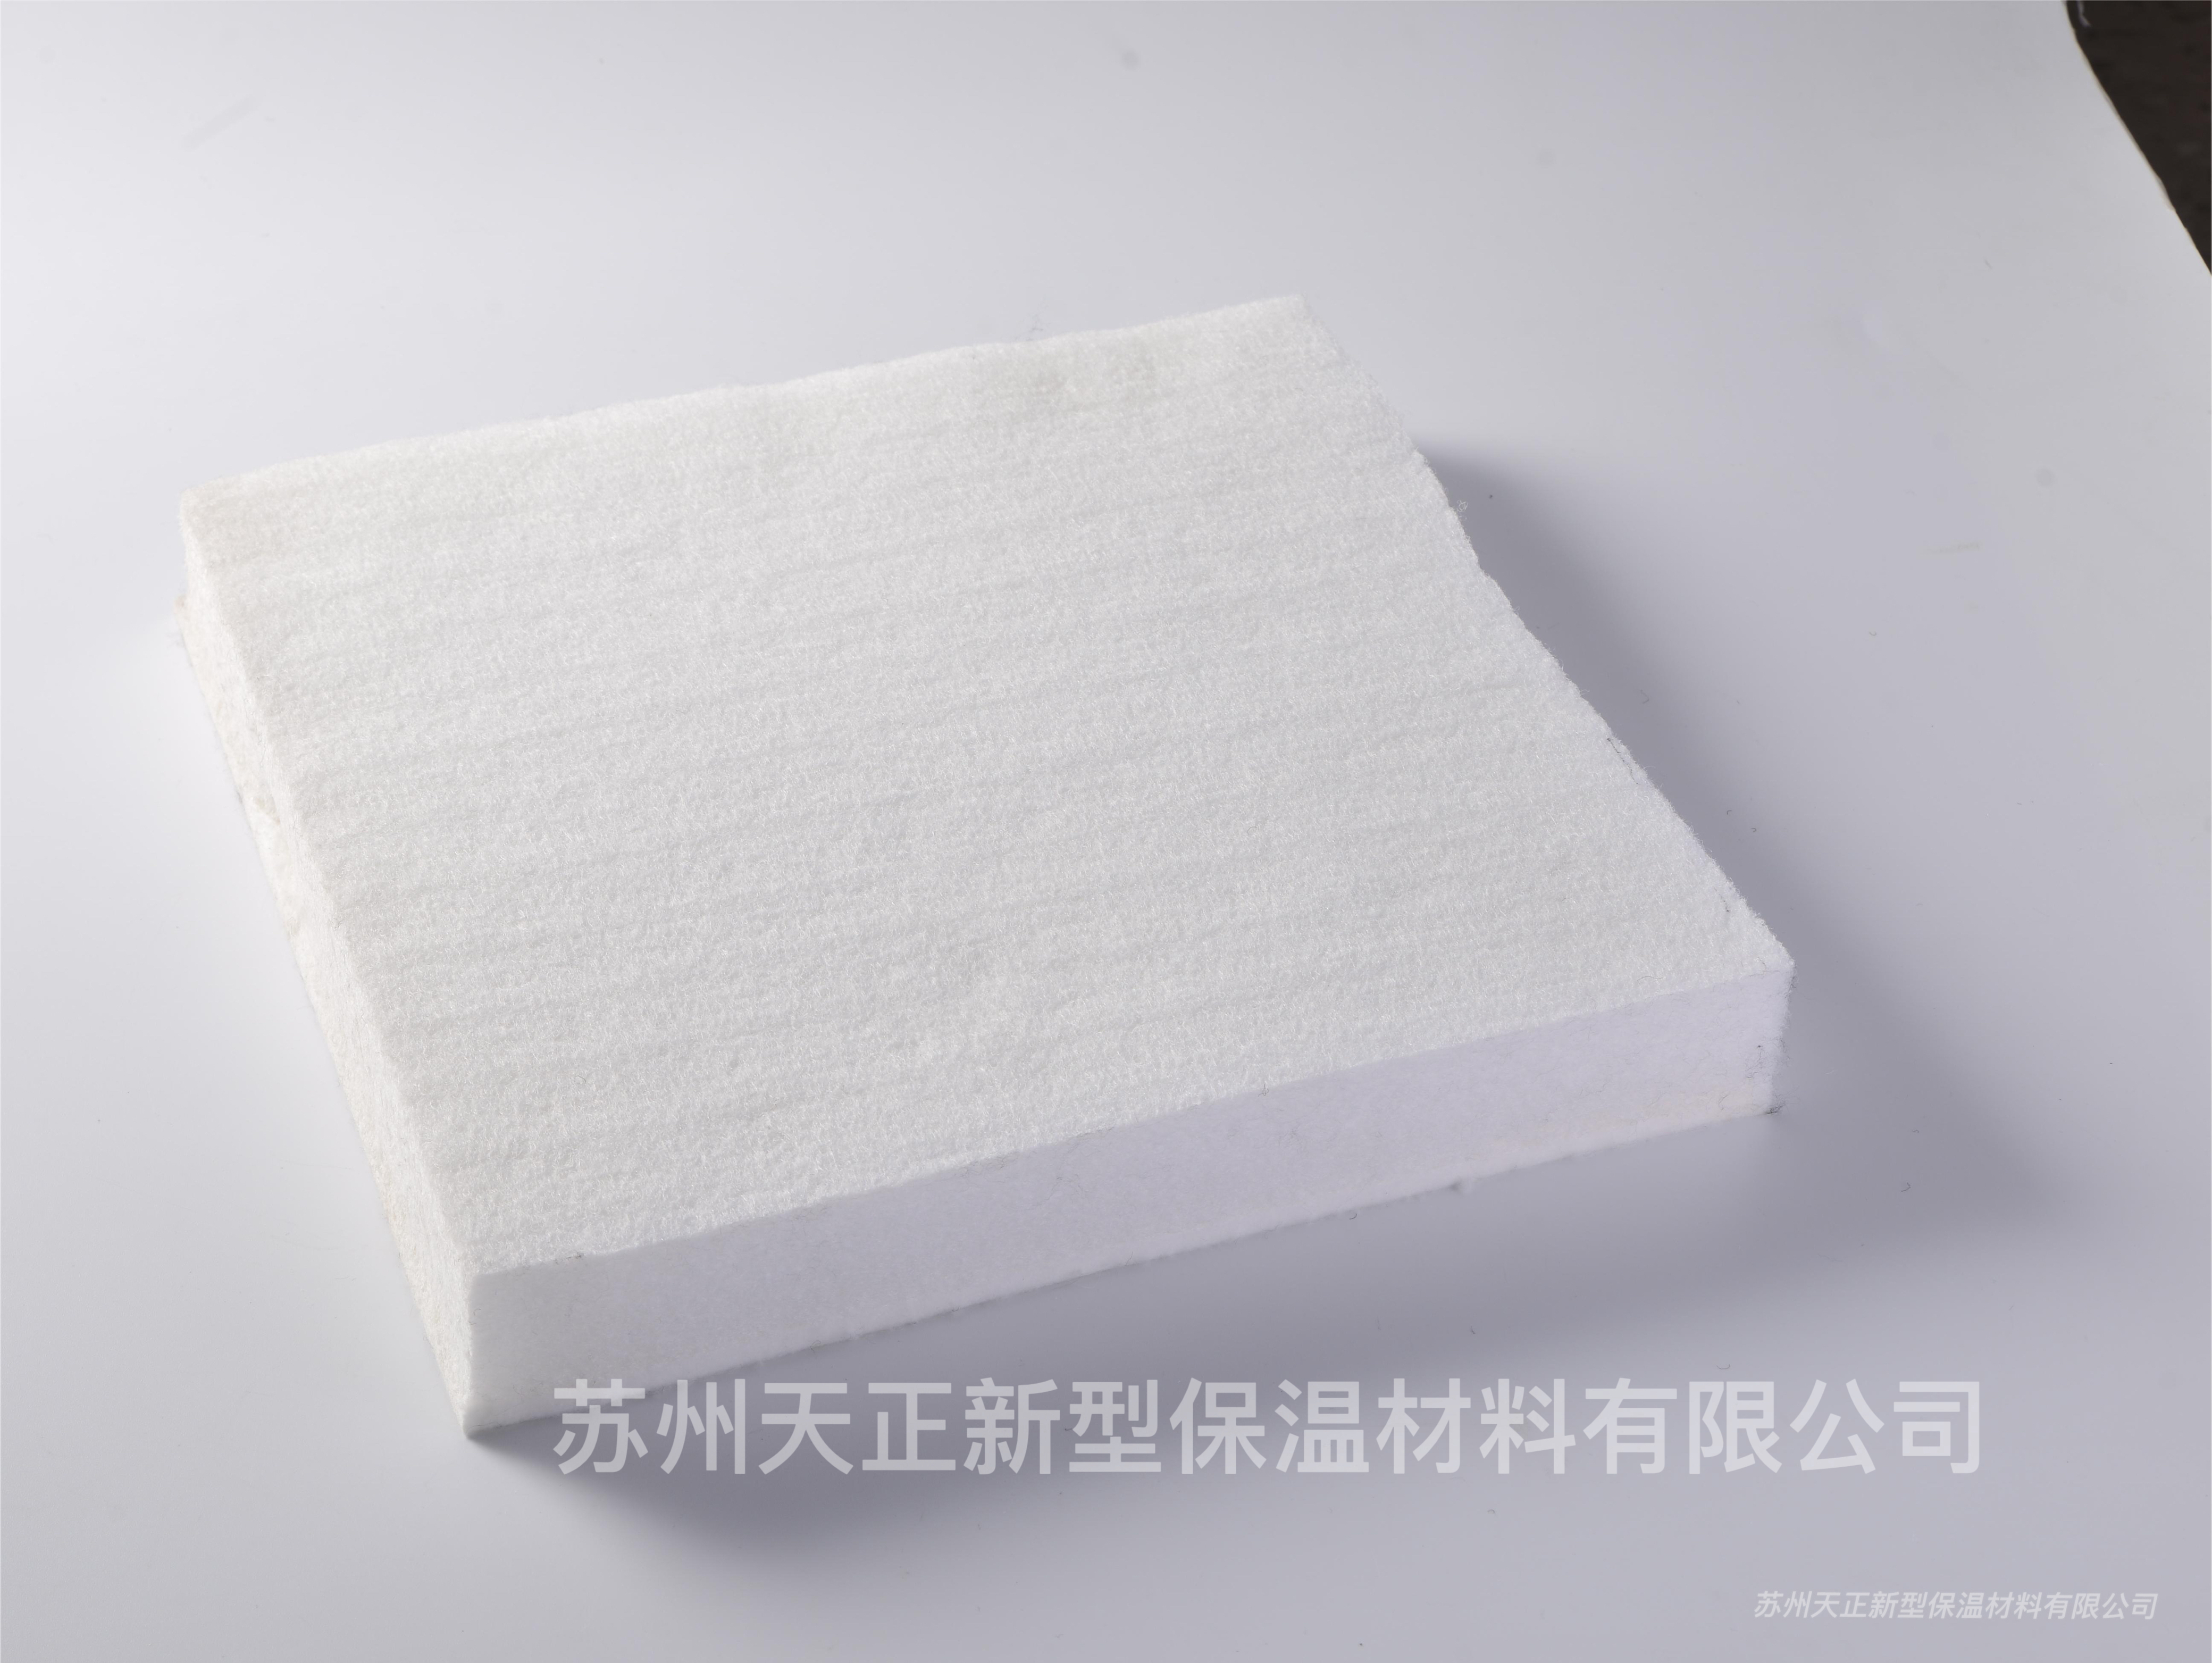 厂家直销空气滤材 床垫坐垫等材料苏州天正硬质棉